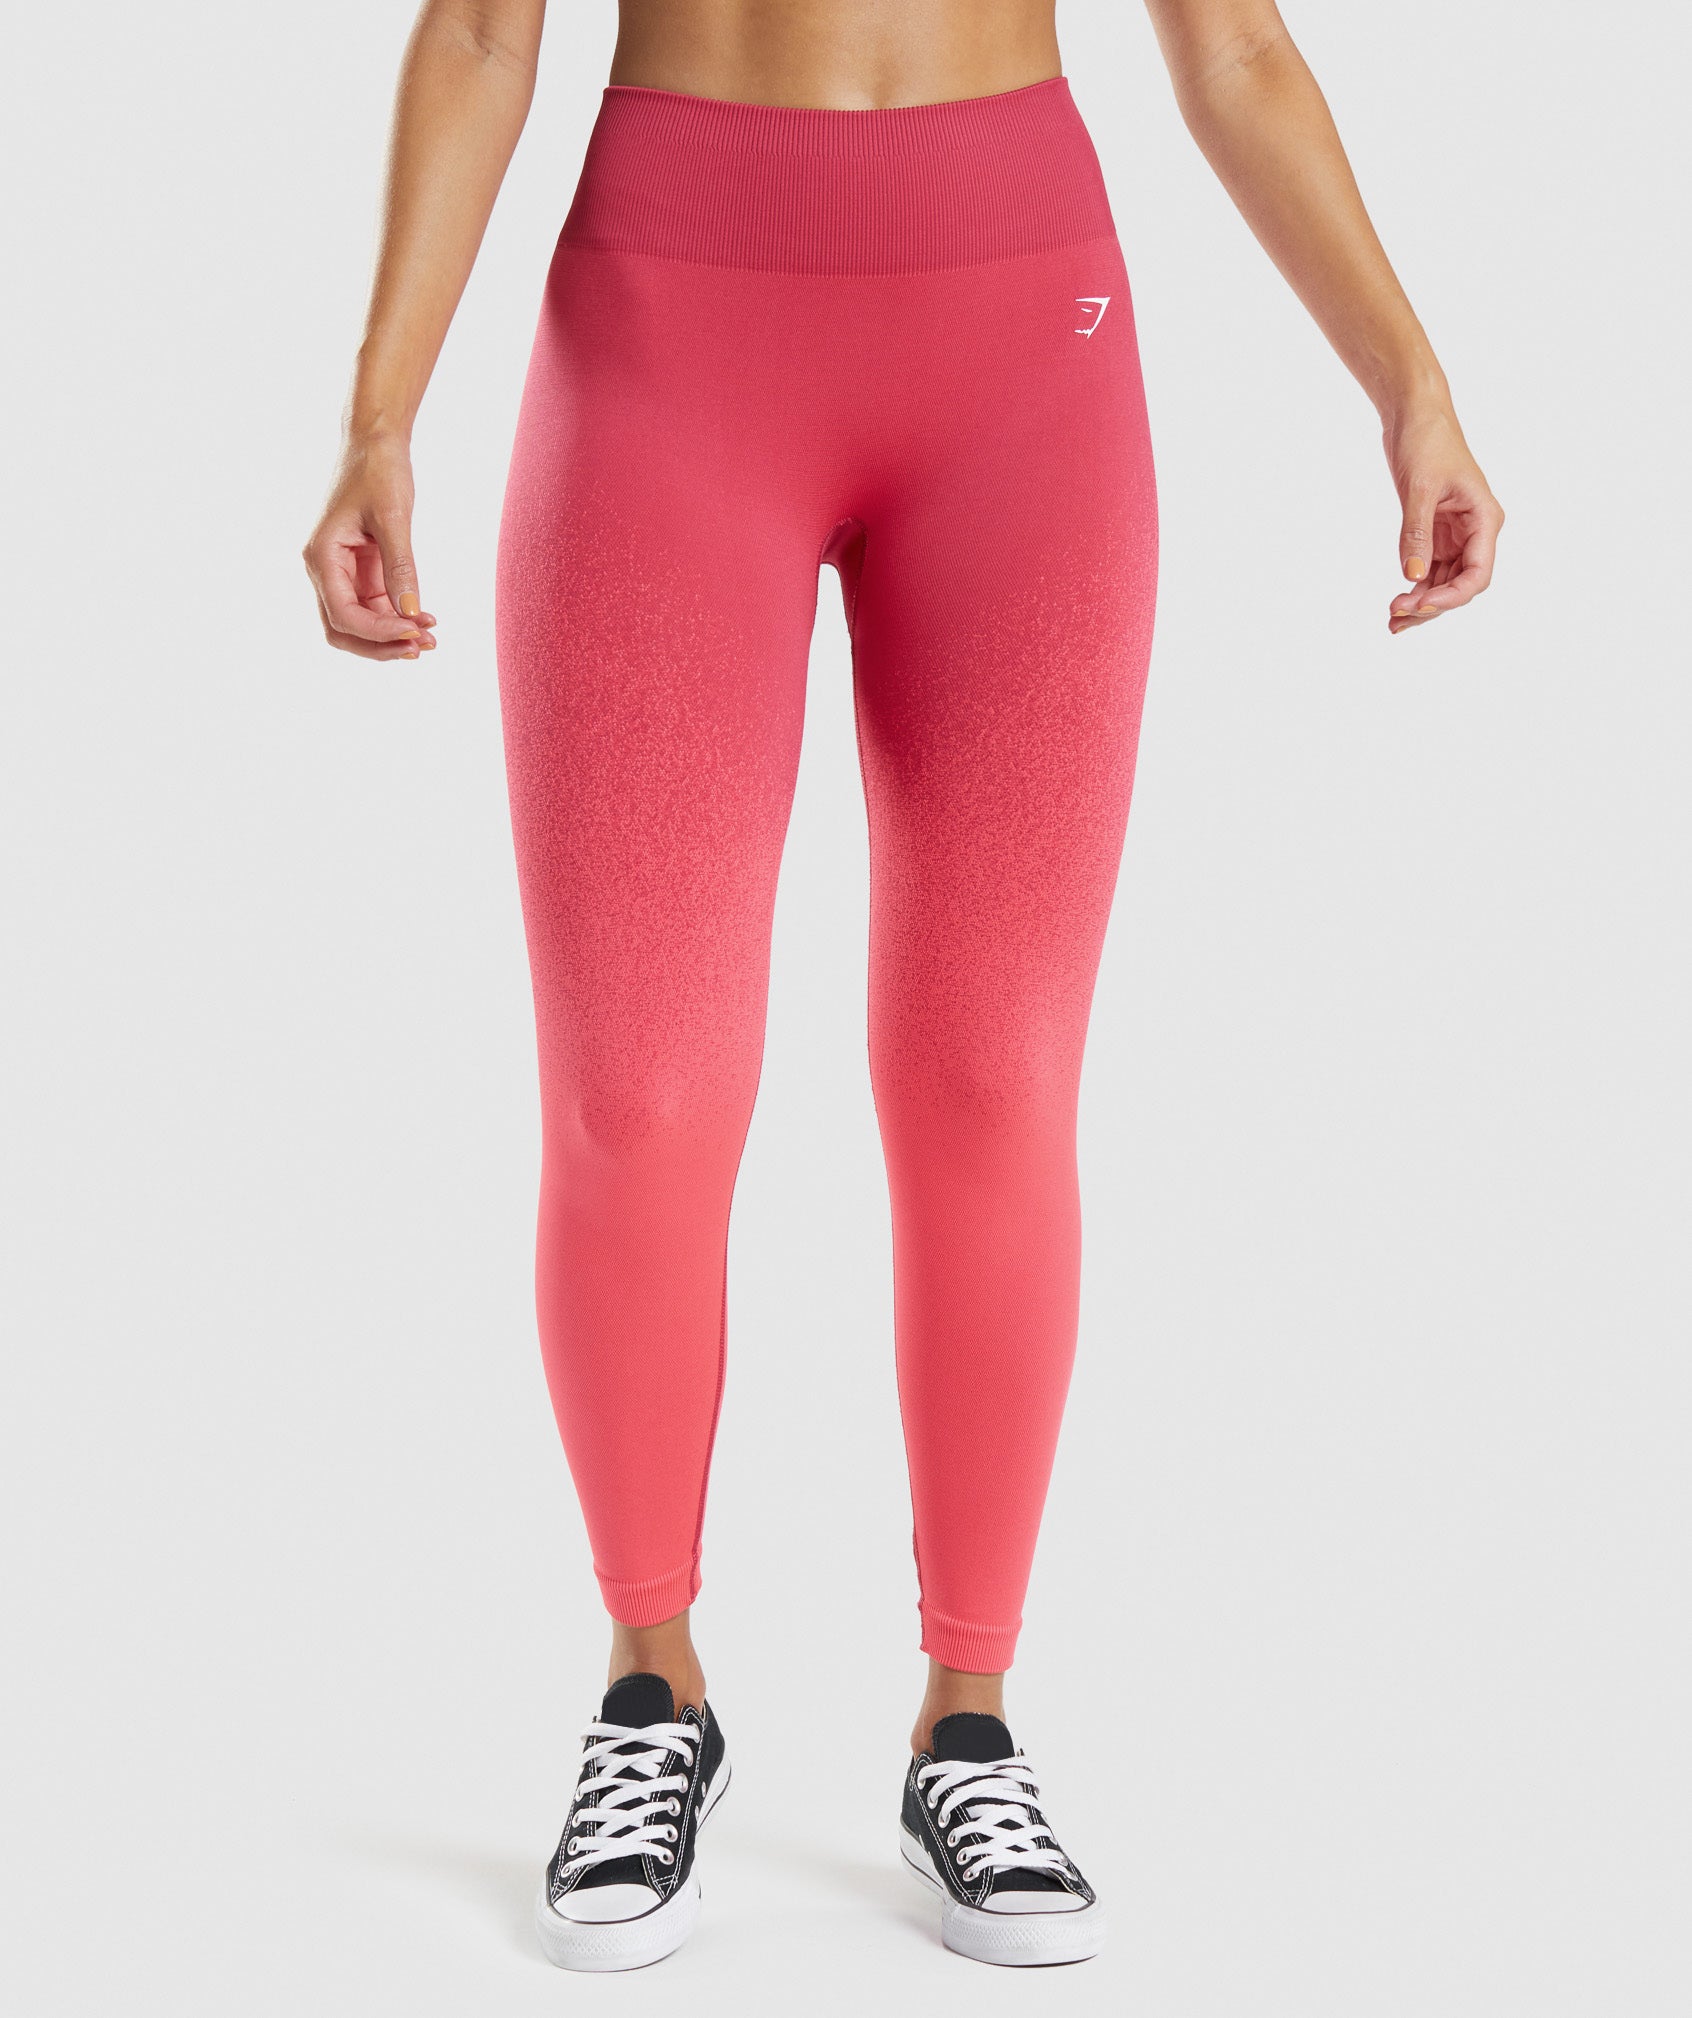 Gymshark pink ombré leggings and bra set